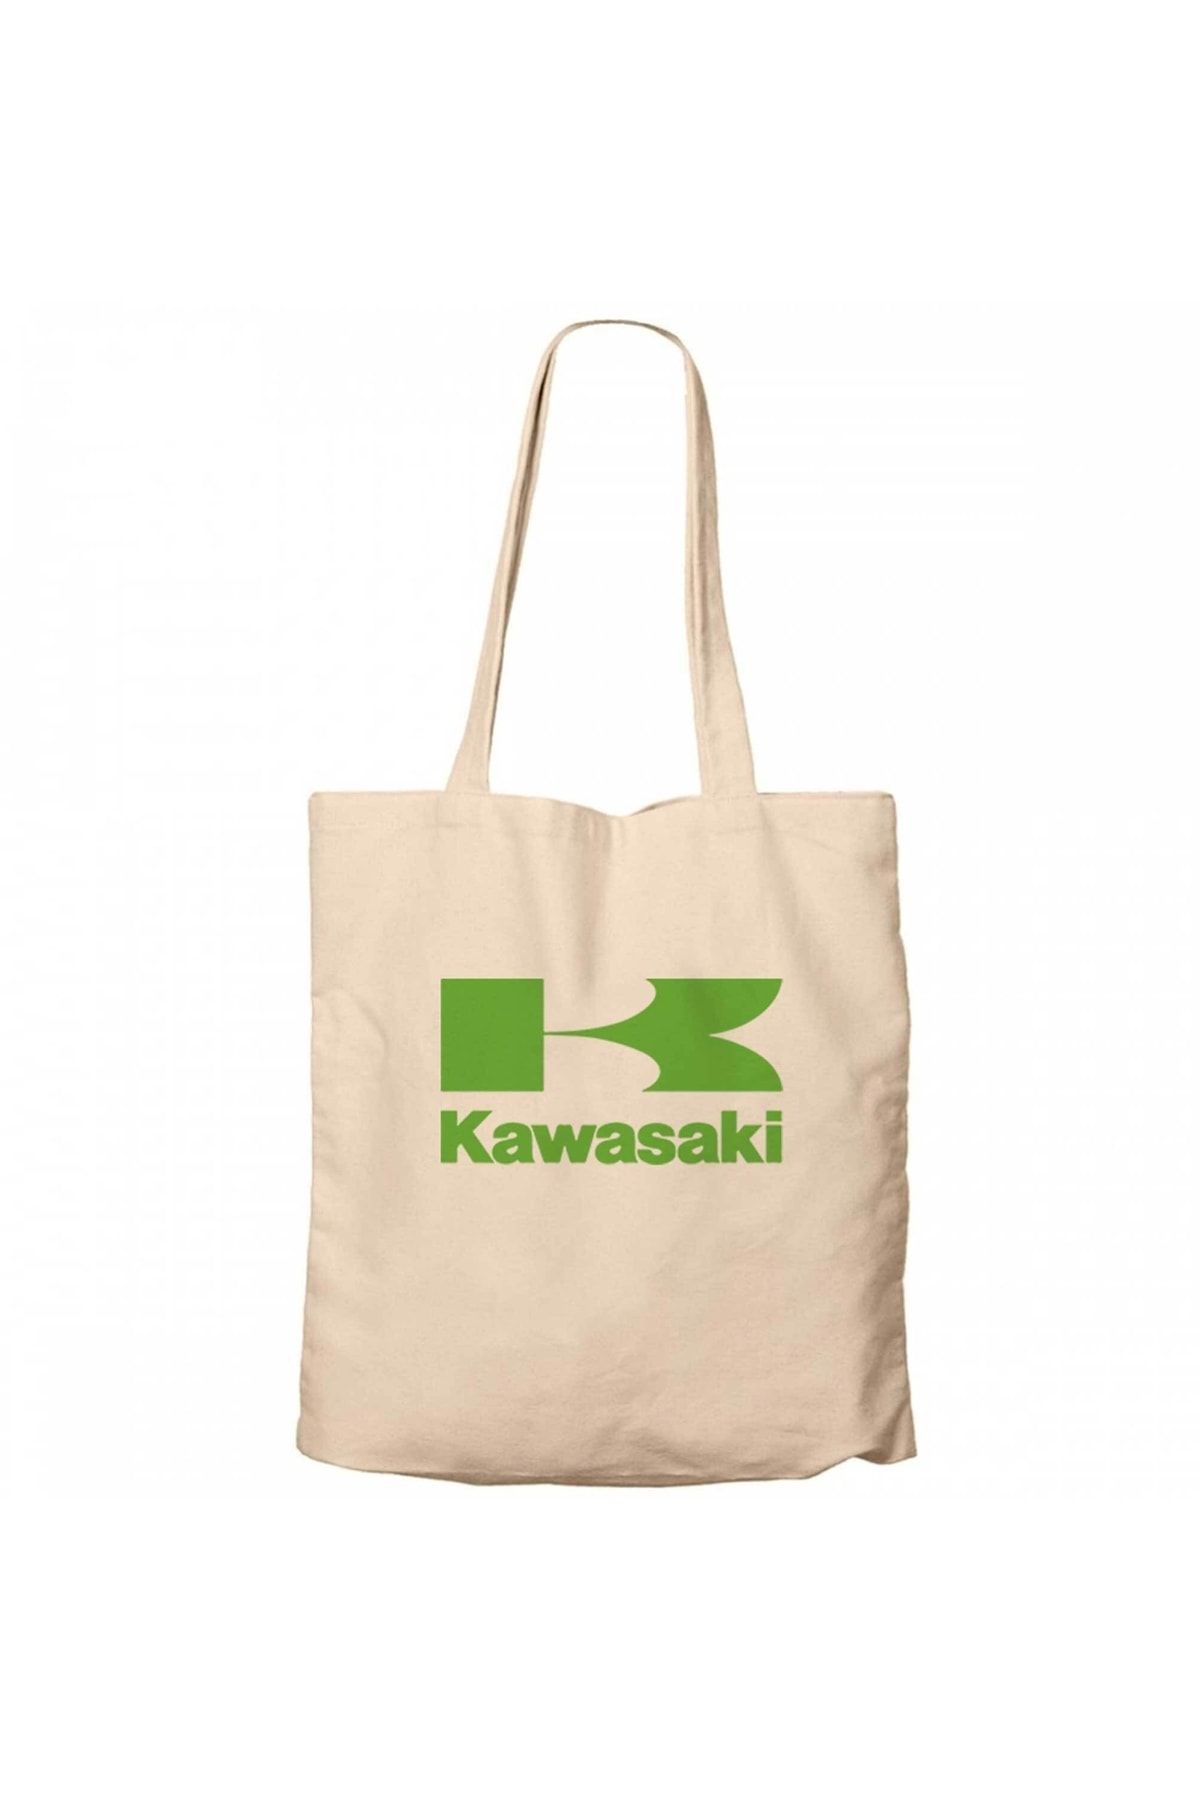 Z zepplin Kawasaki Yeşil Logo Krem Kanvas Bez Çanta